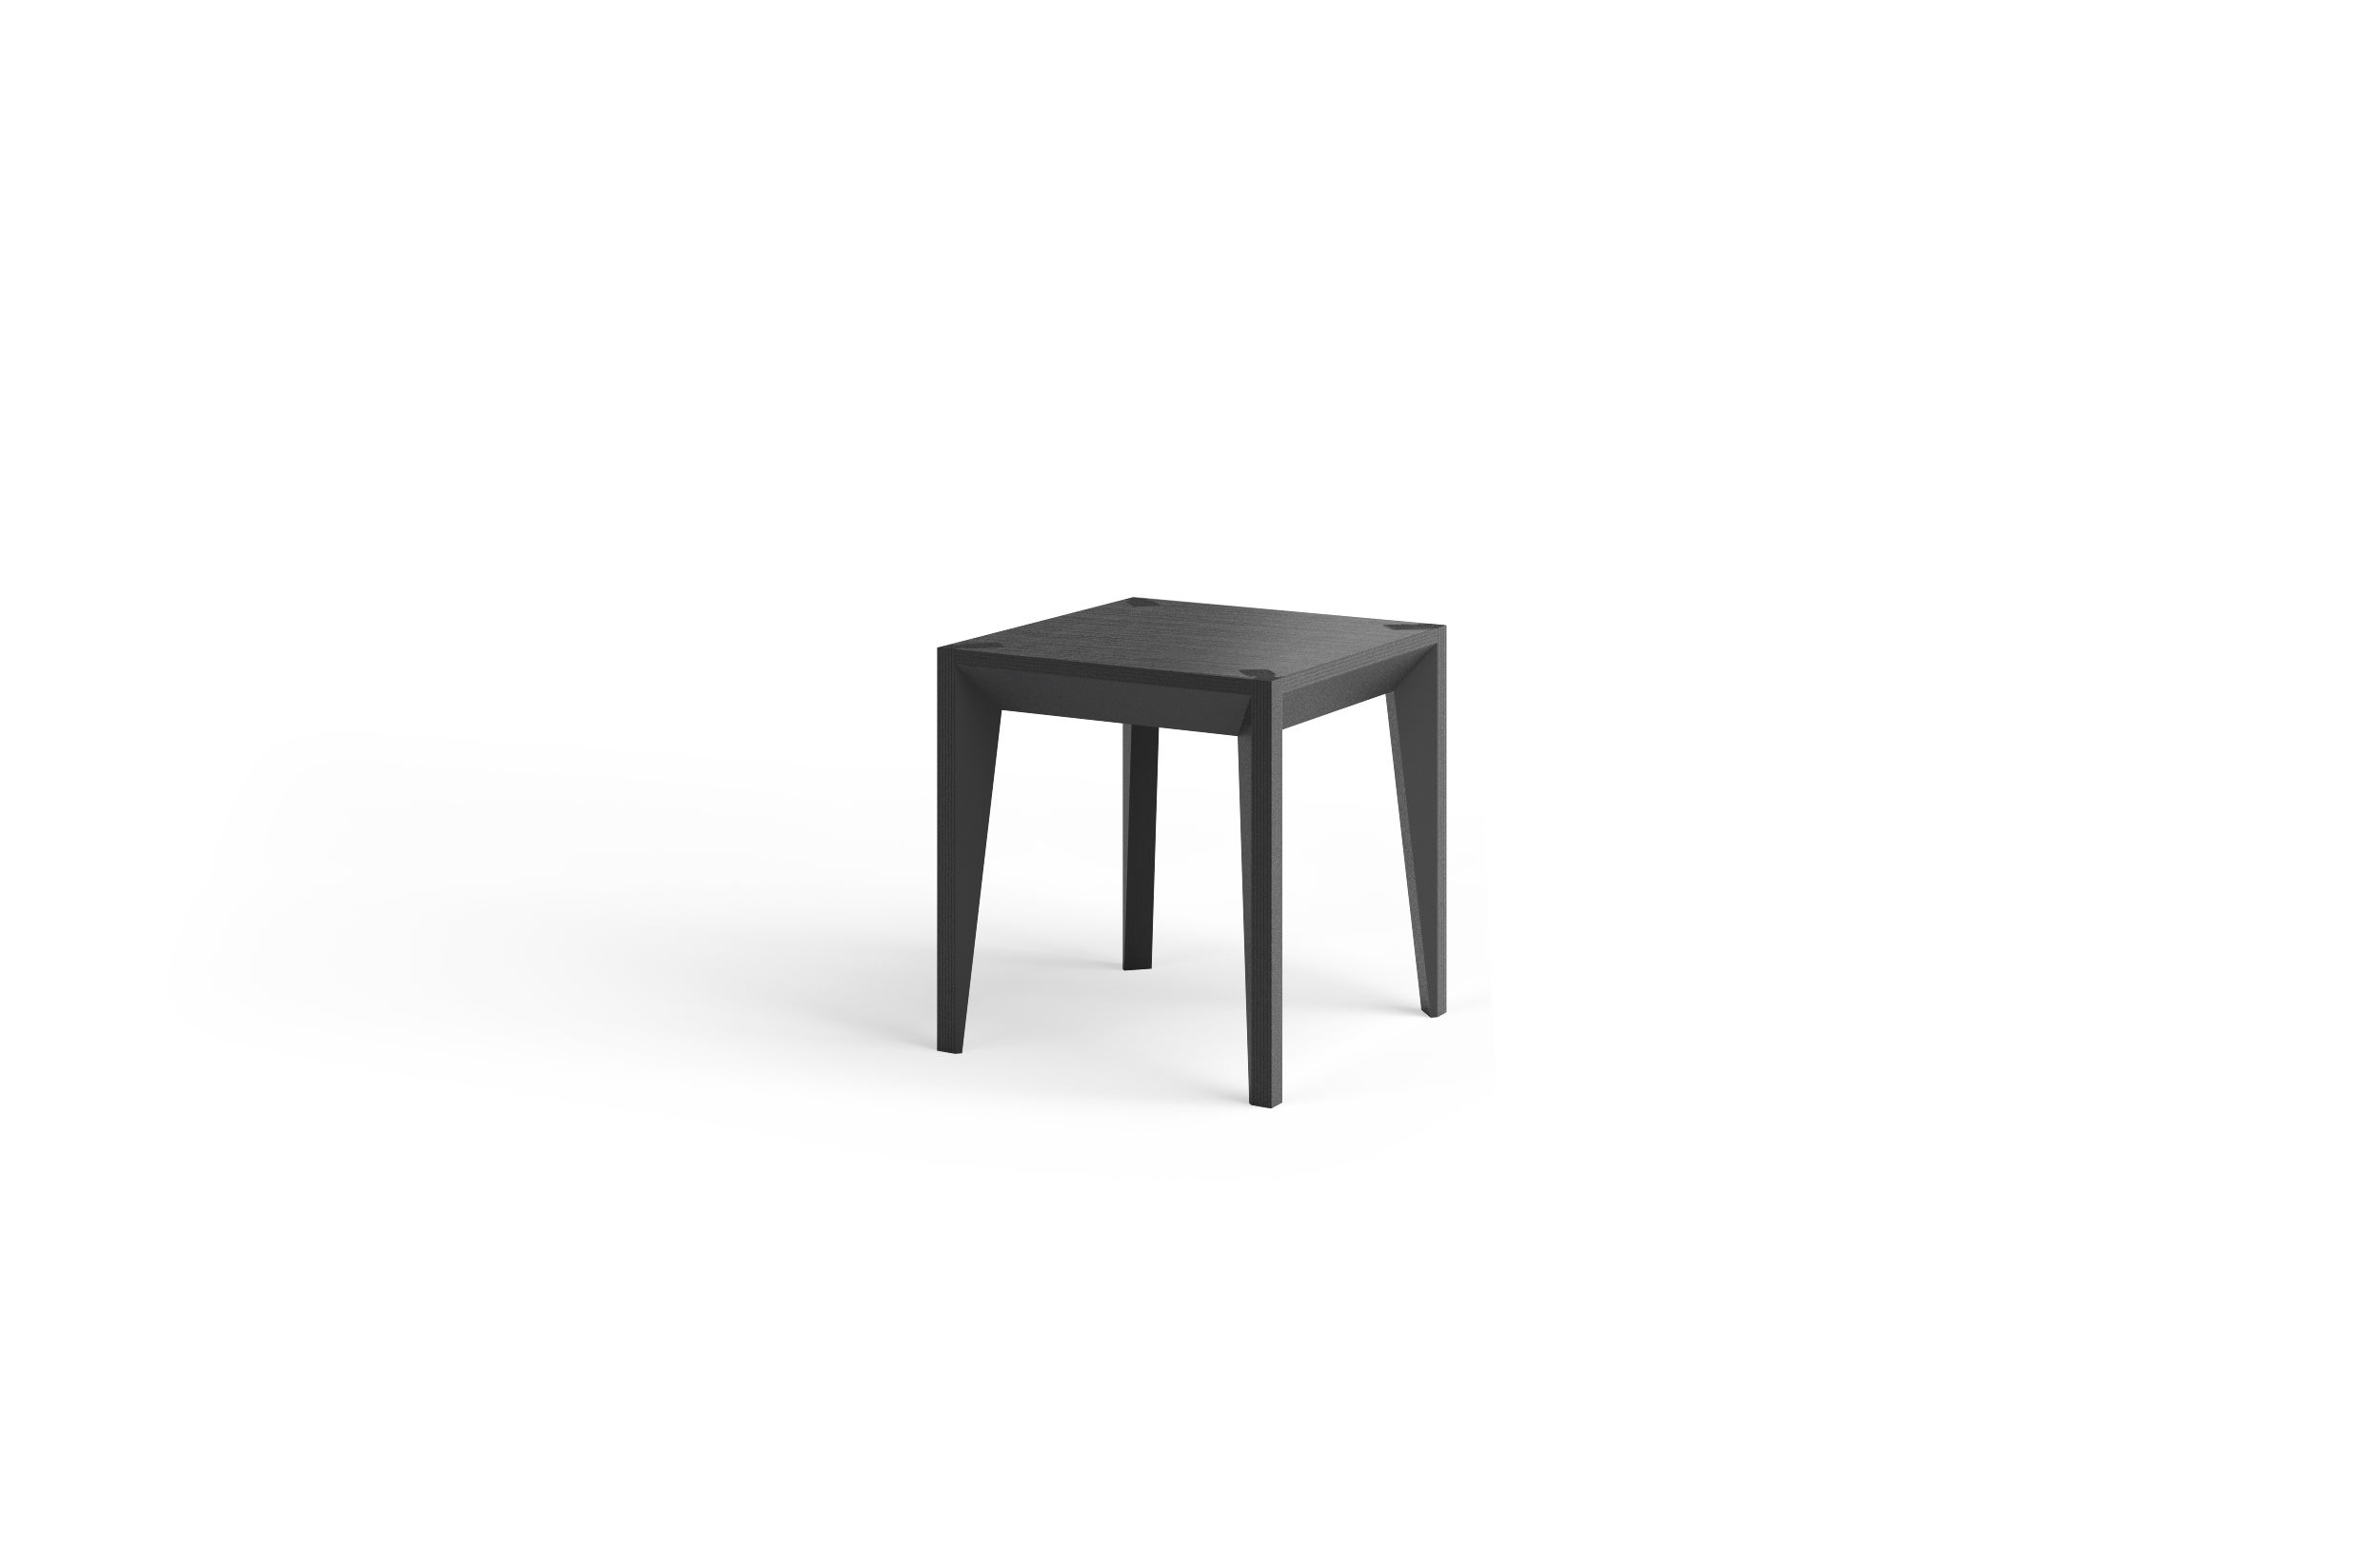 Dieser minimalistische, vielseitige Beistelltisch oder Hocker gehört zur MiMi-Serie und setzt Akzente in Haus und Büro. Die klare, facettierte Geometrie verleiht ihm Tiefe und Raffinesse, während die quadratische, 17 Zoll breite, flache Tischplatte